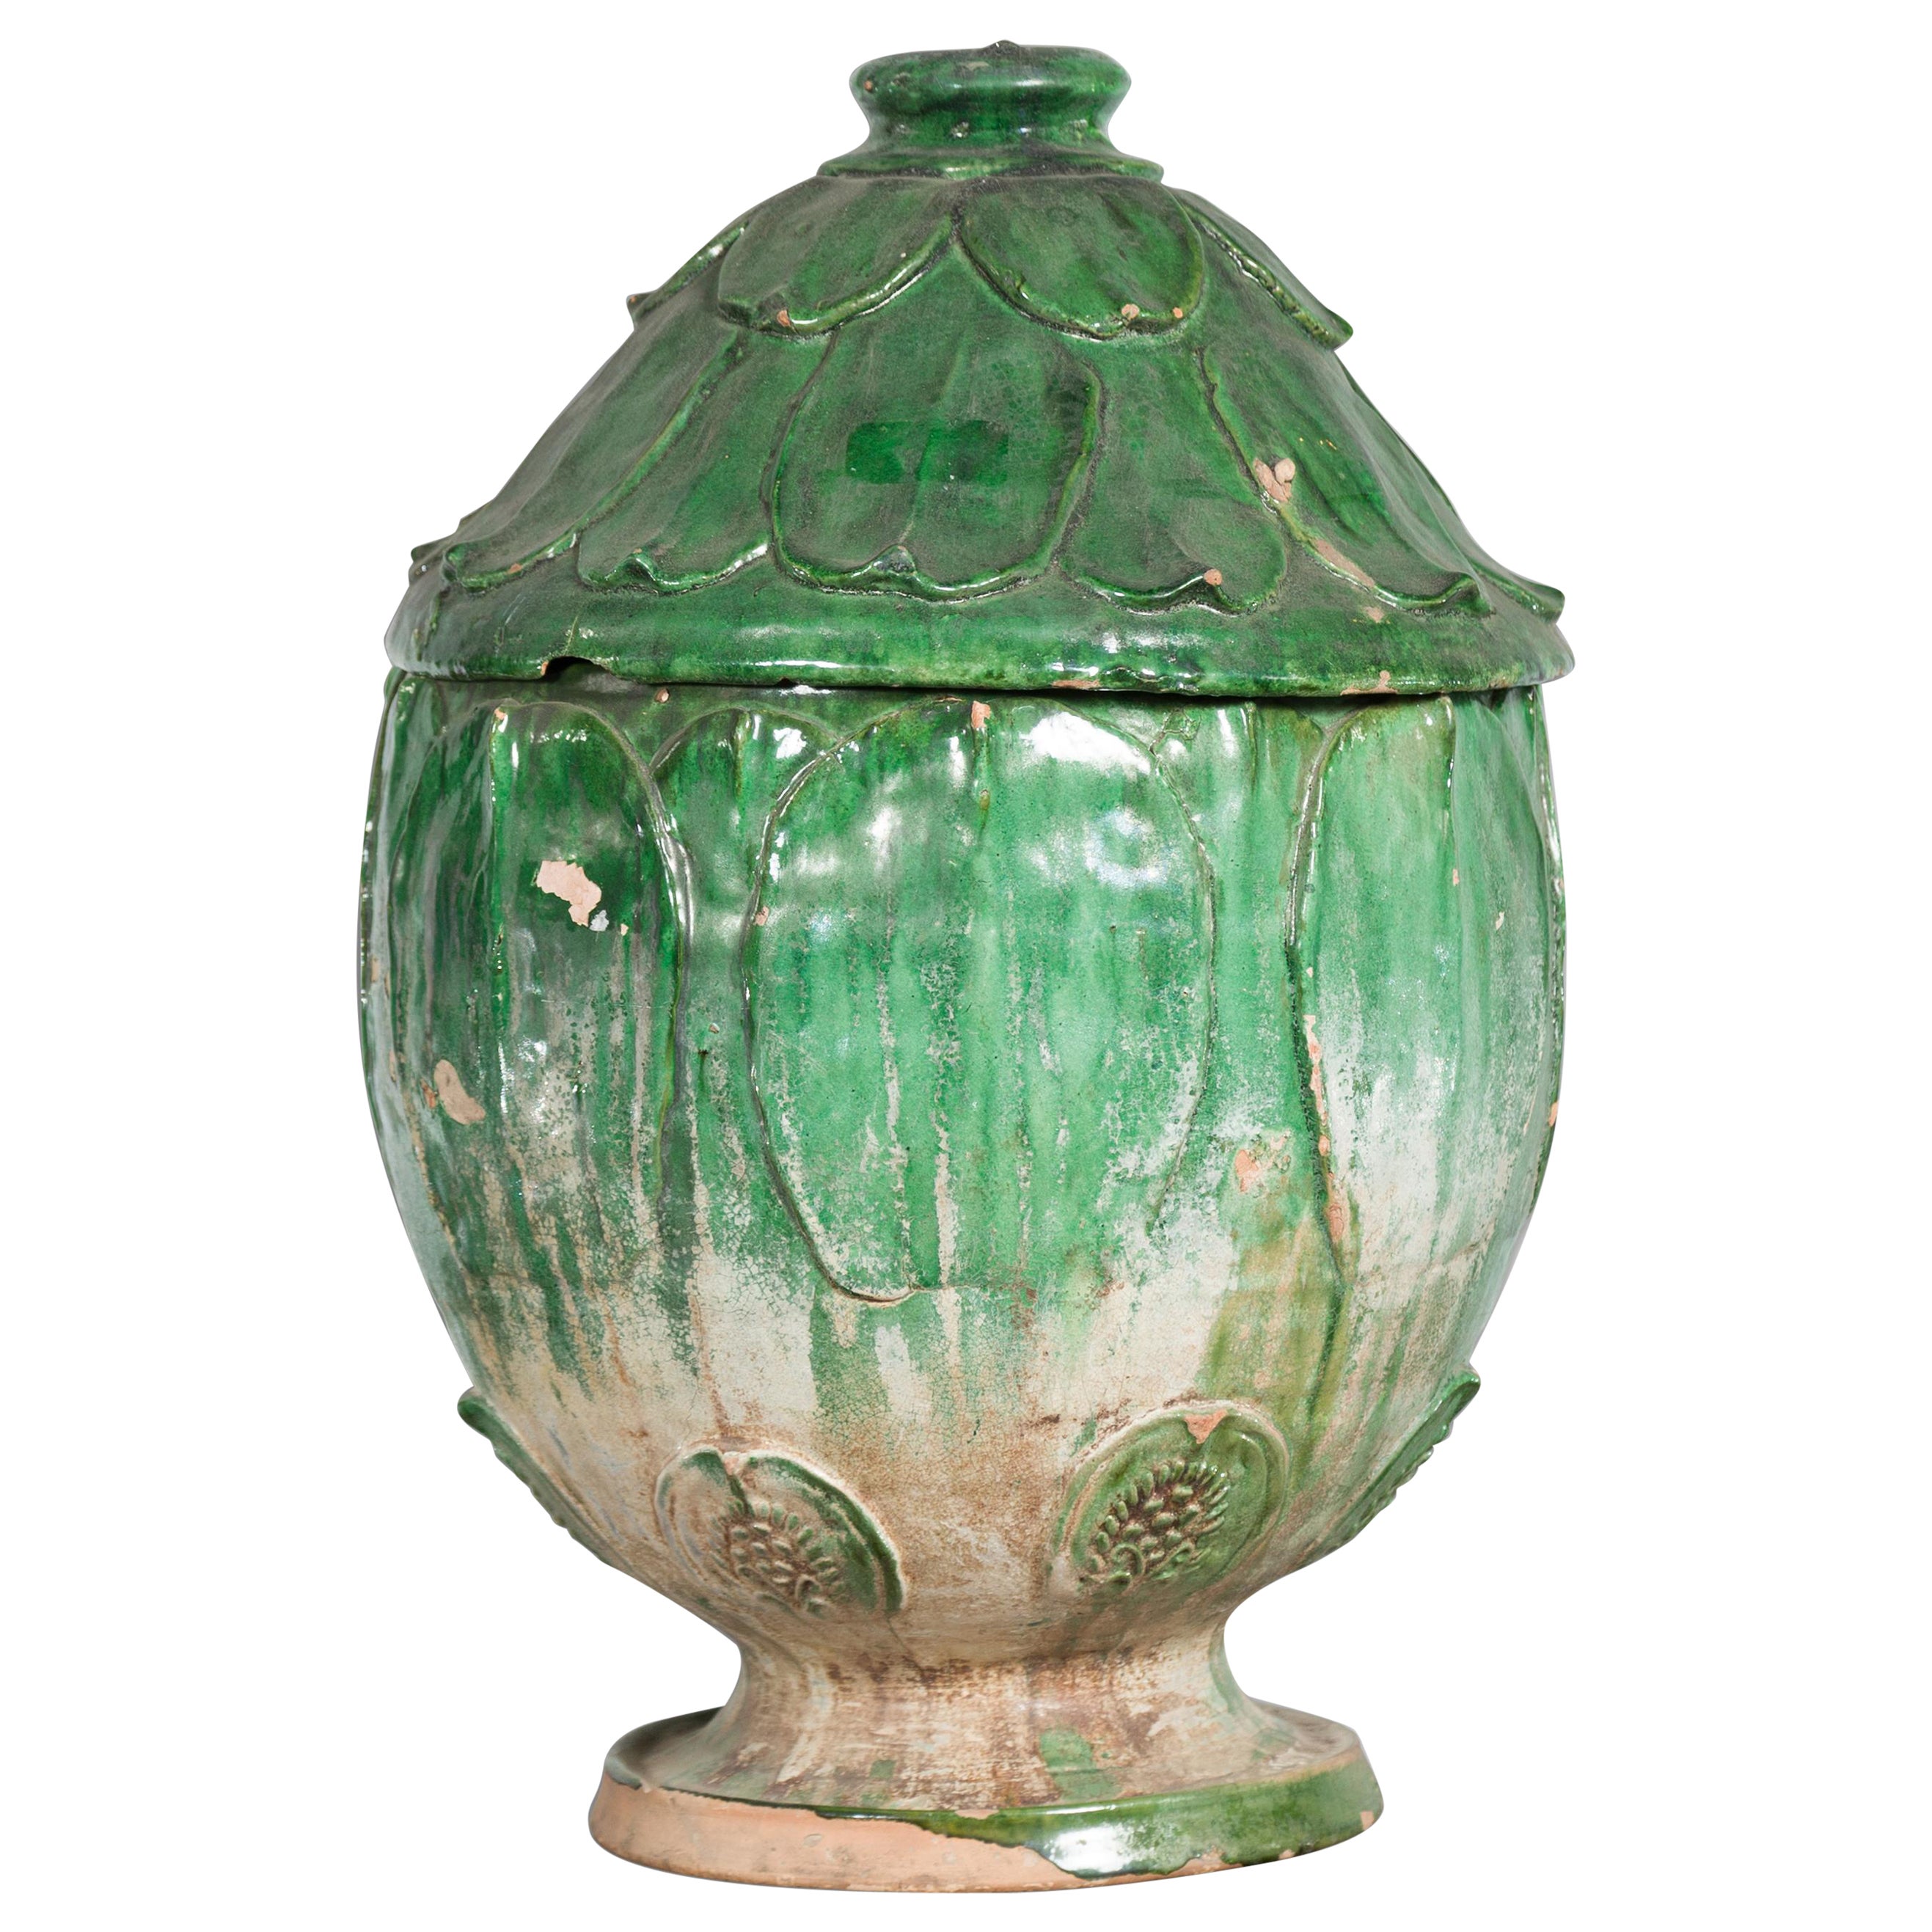 14th Century Yuan Dynasty leaf-green glazed lotus burial jar